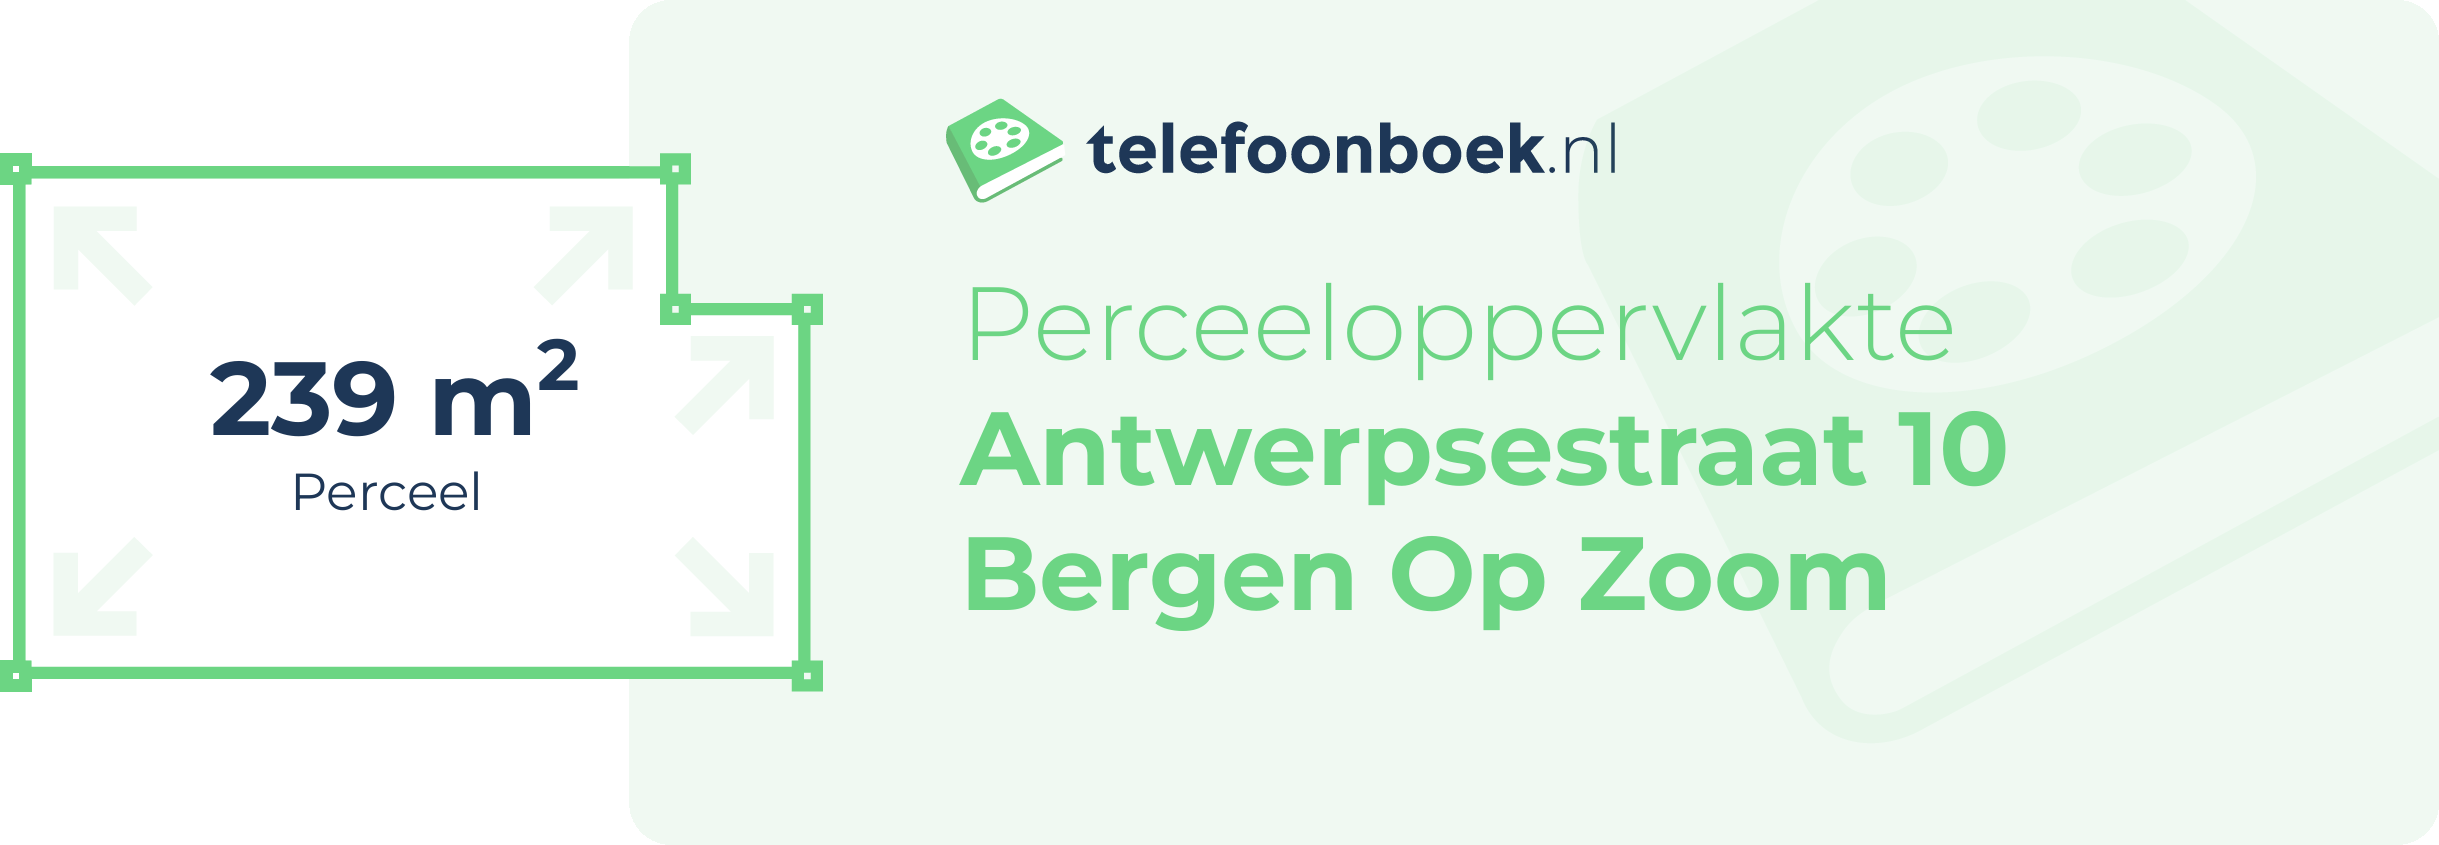 Perceeloppervlakte Antwerpsestraat 10 Bergen Op Zoom